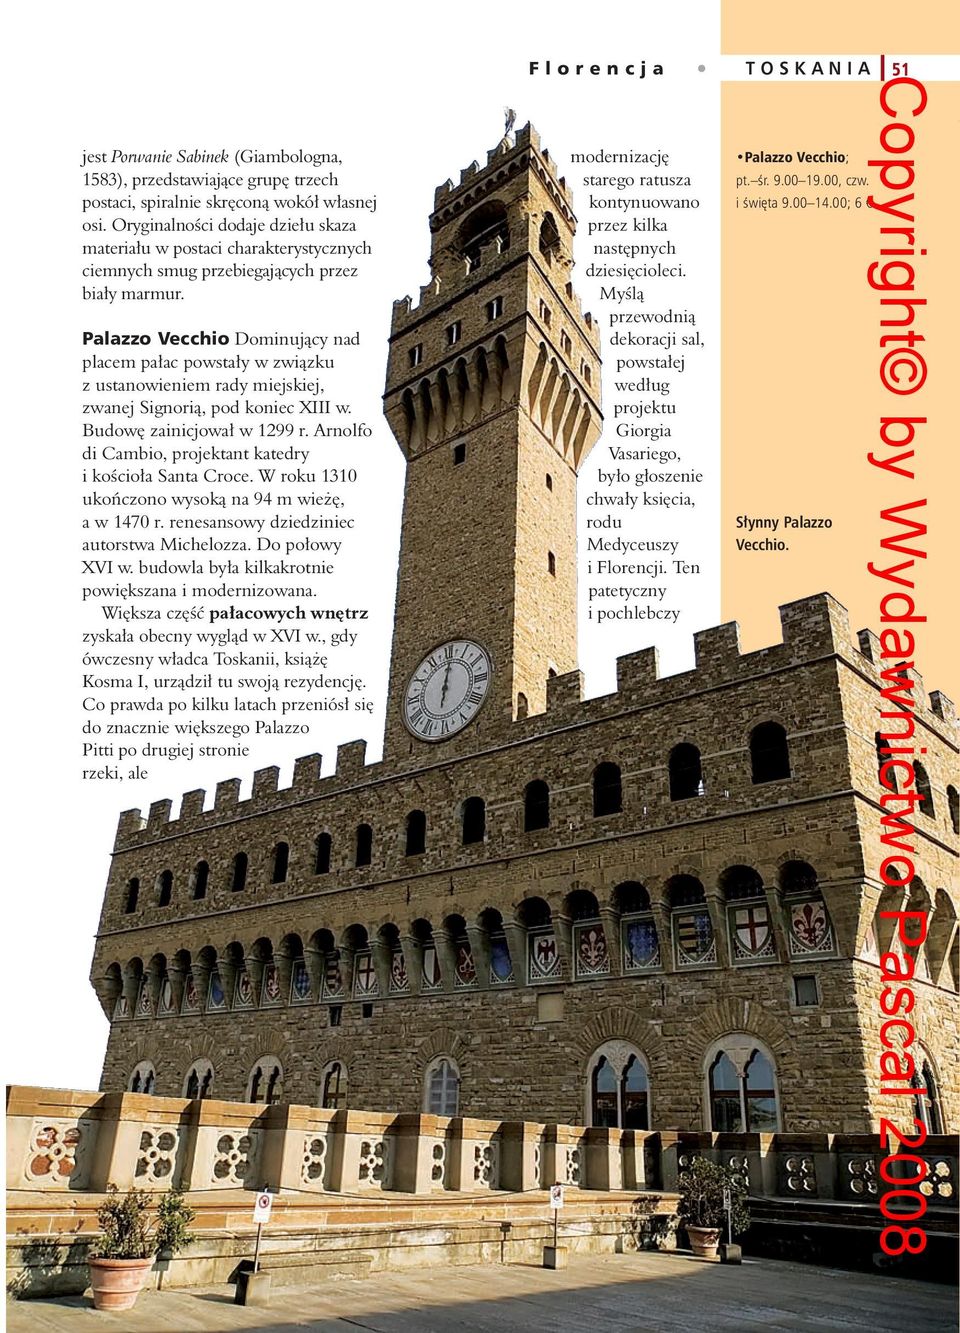 Palazzo Vecchio Dominujący nad placem pałac powstały w związku z ustanowieniem rady miejskiej, zwanej Signorią, pod koniec XIII w. Budowę zainicjował w 1299 r.